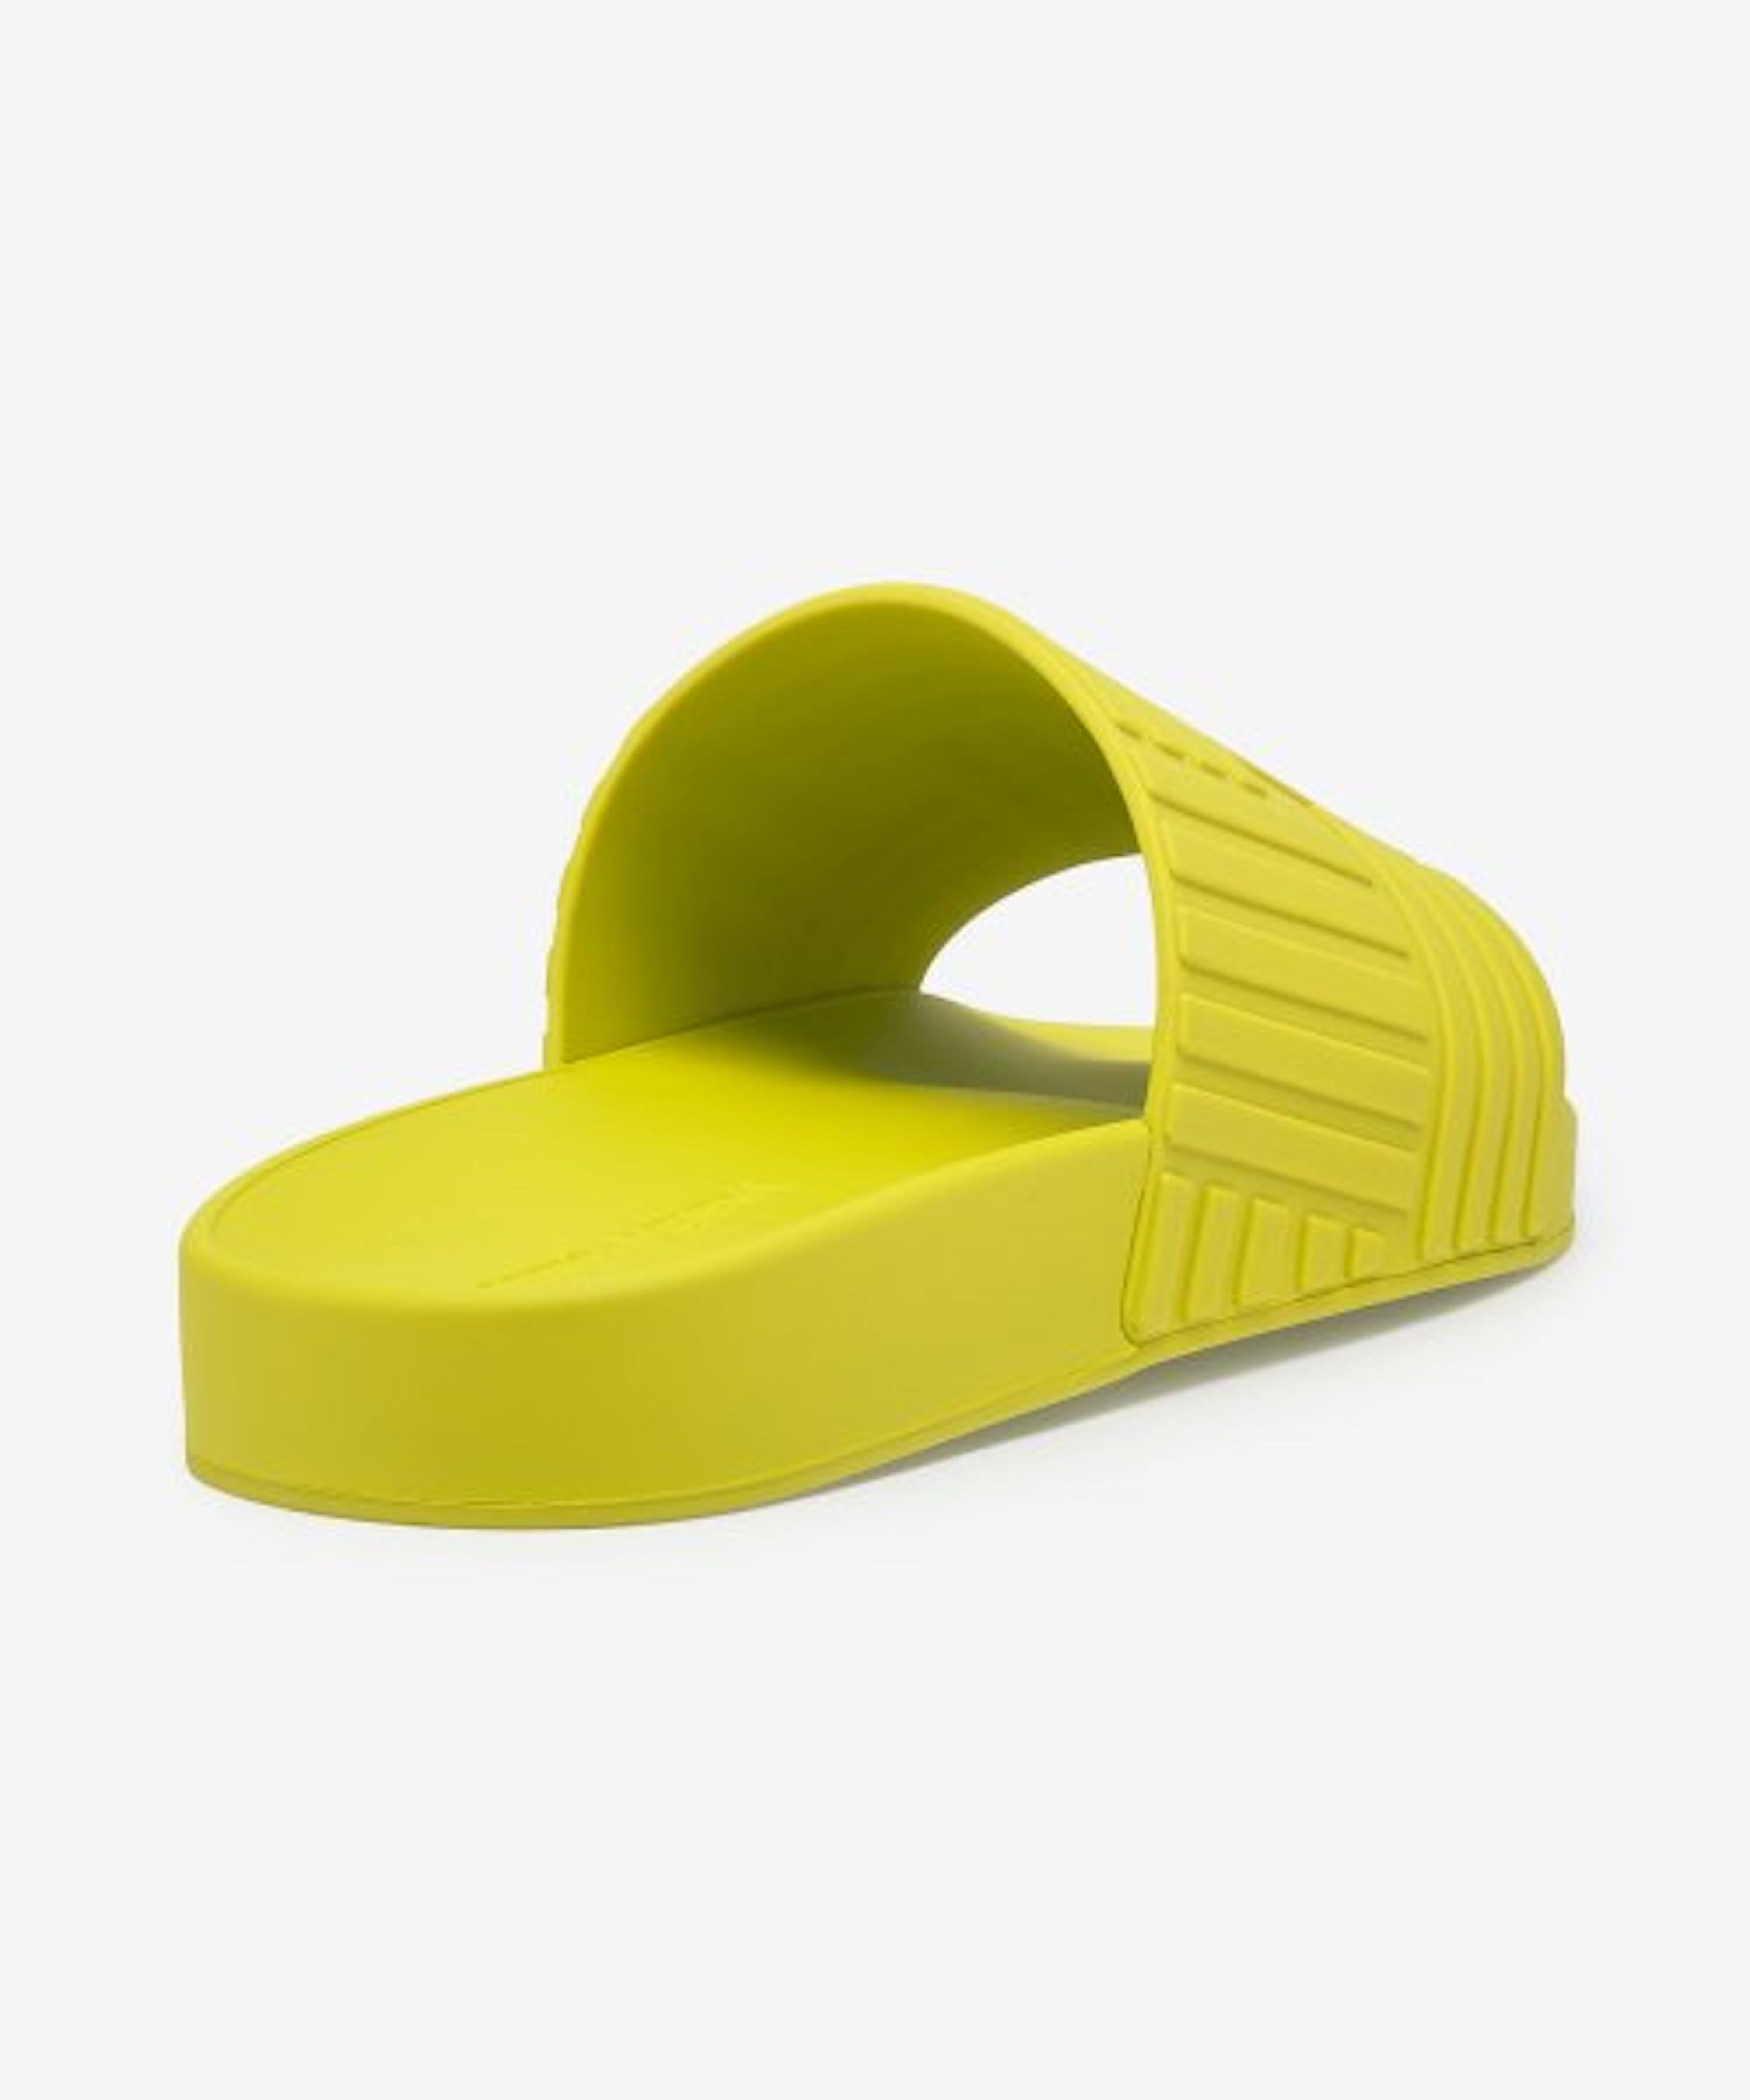 Bottega Veneta Men's Rubber Slide in Kiwi Sz 44 For Sale 1